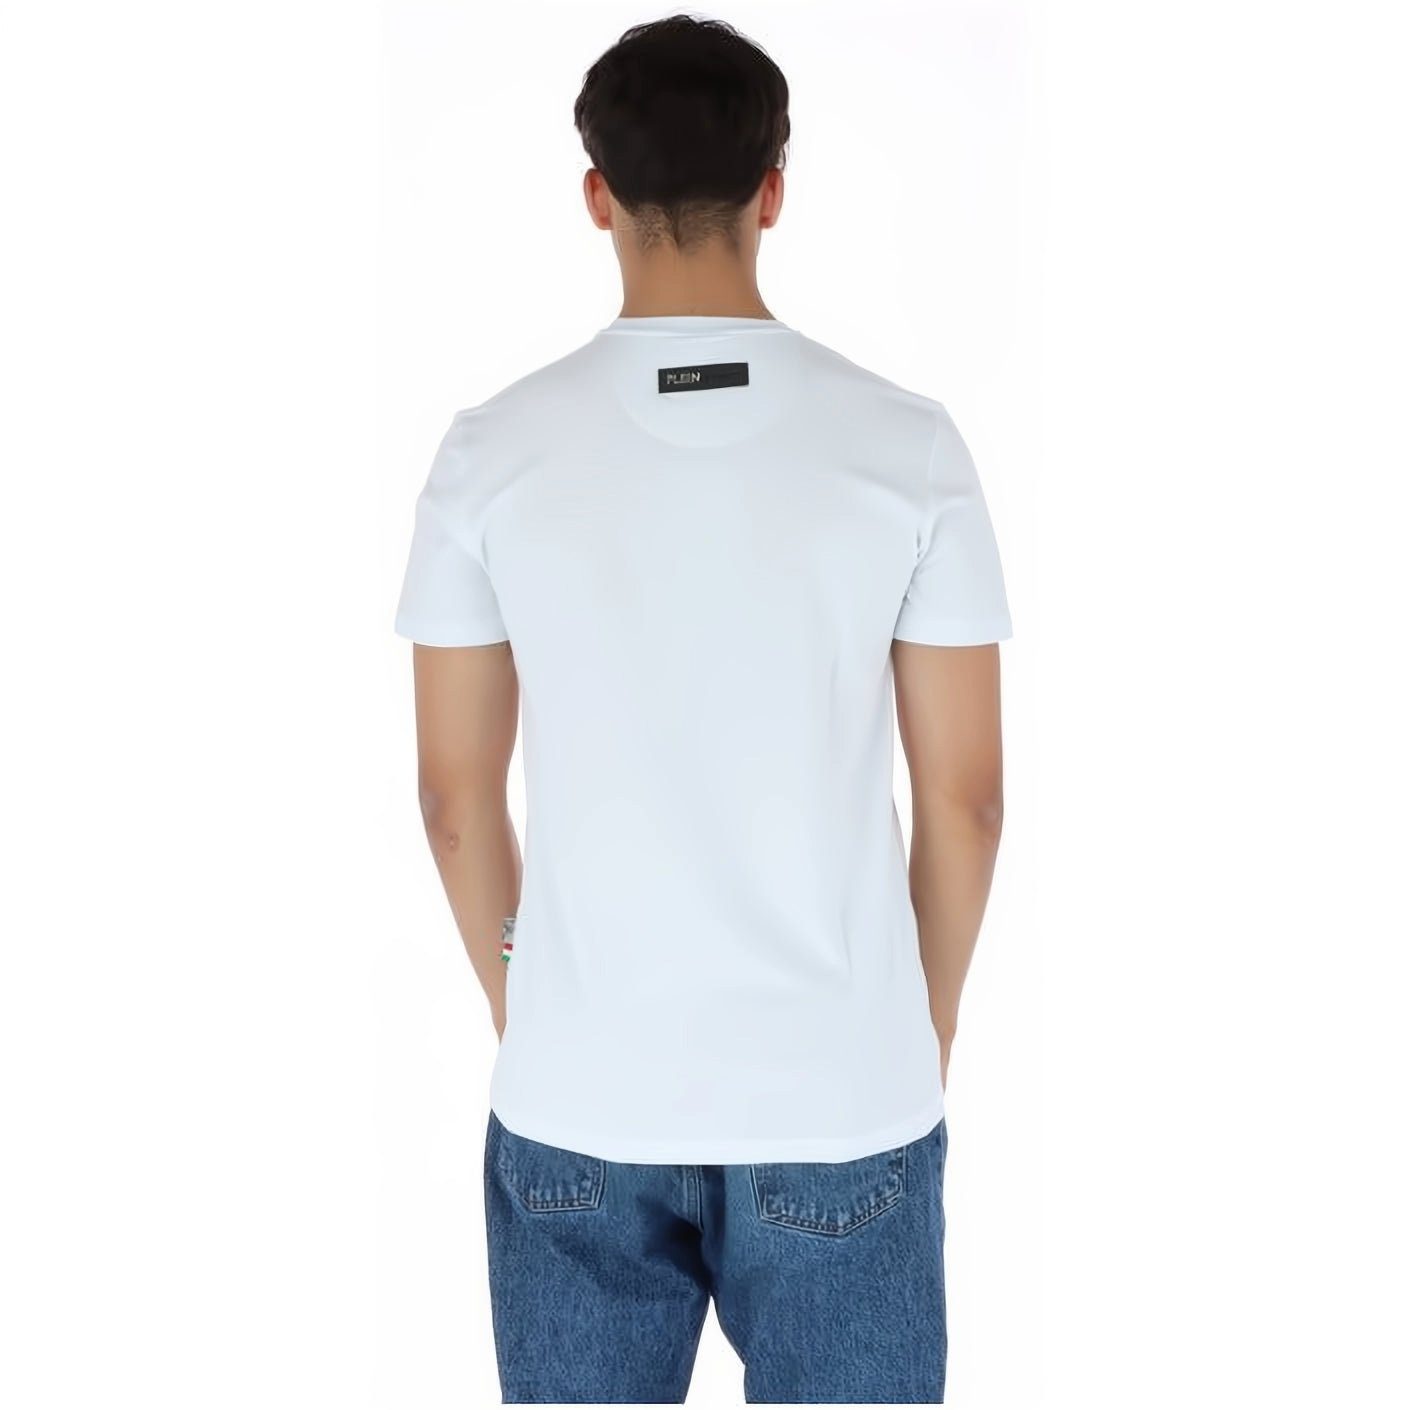 Tragekomfort, Farbauswahl hoher ROUND SPORT Look, PLEIN Stylischer NECK T-Shirt vielfältige